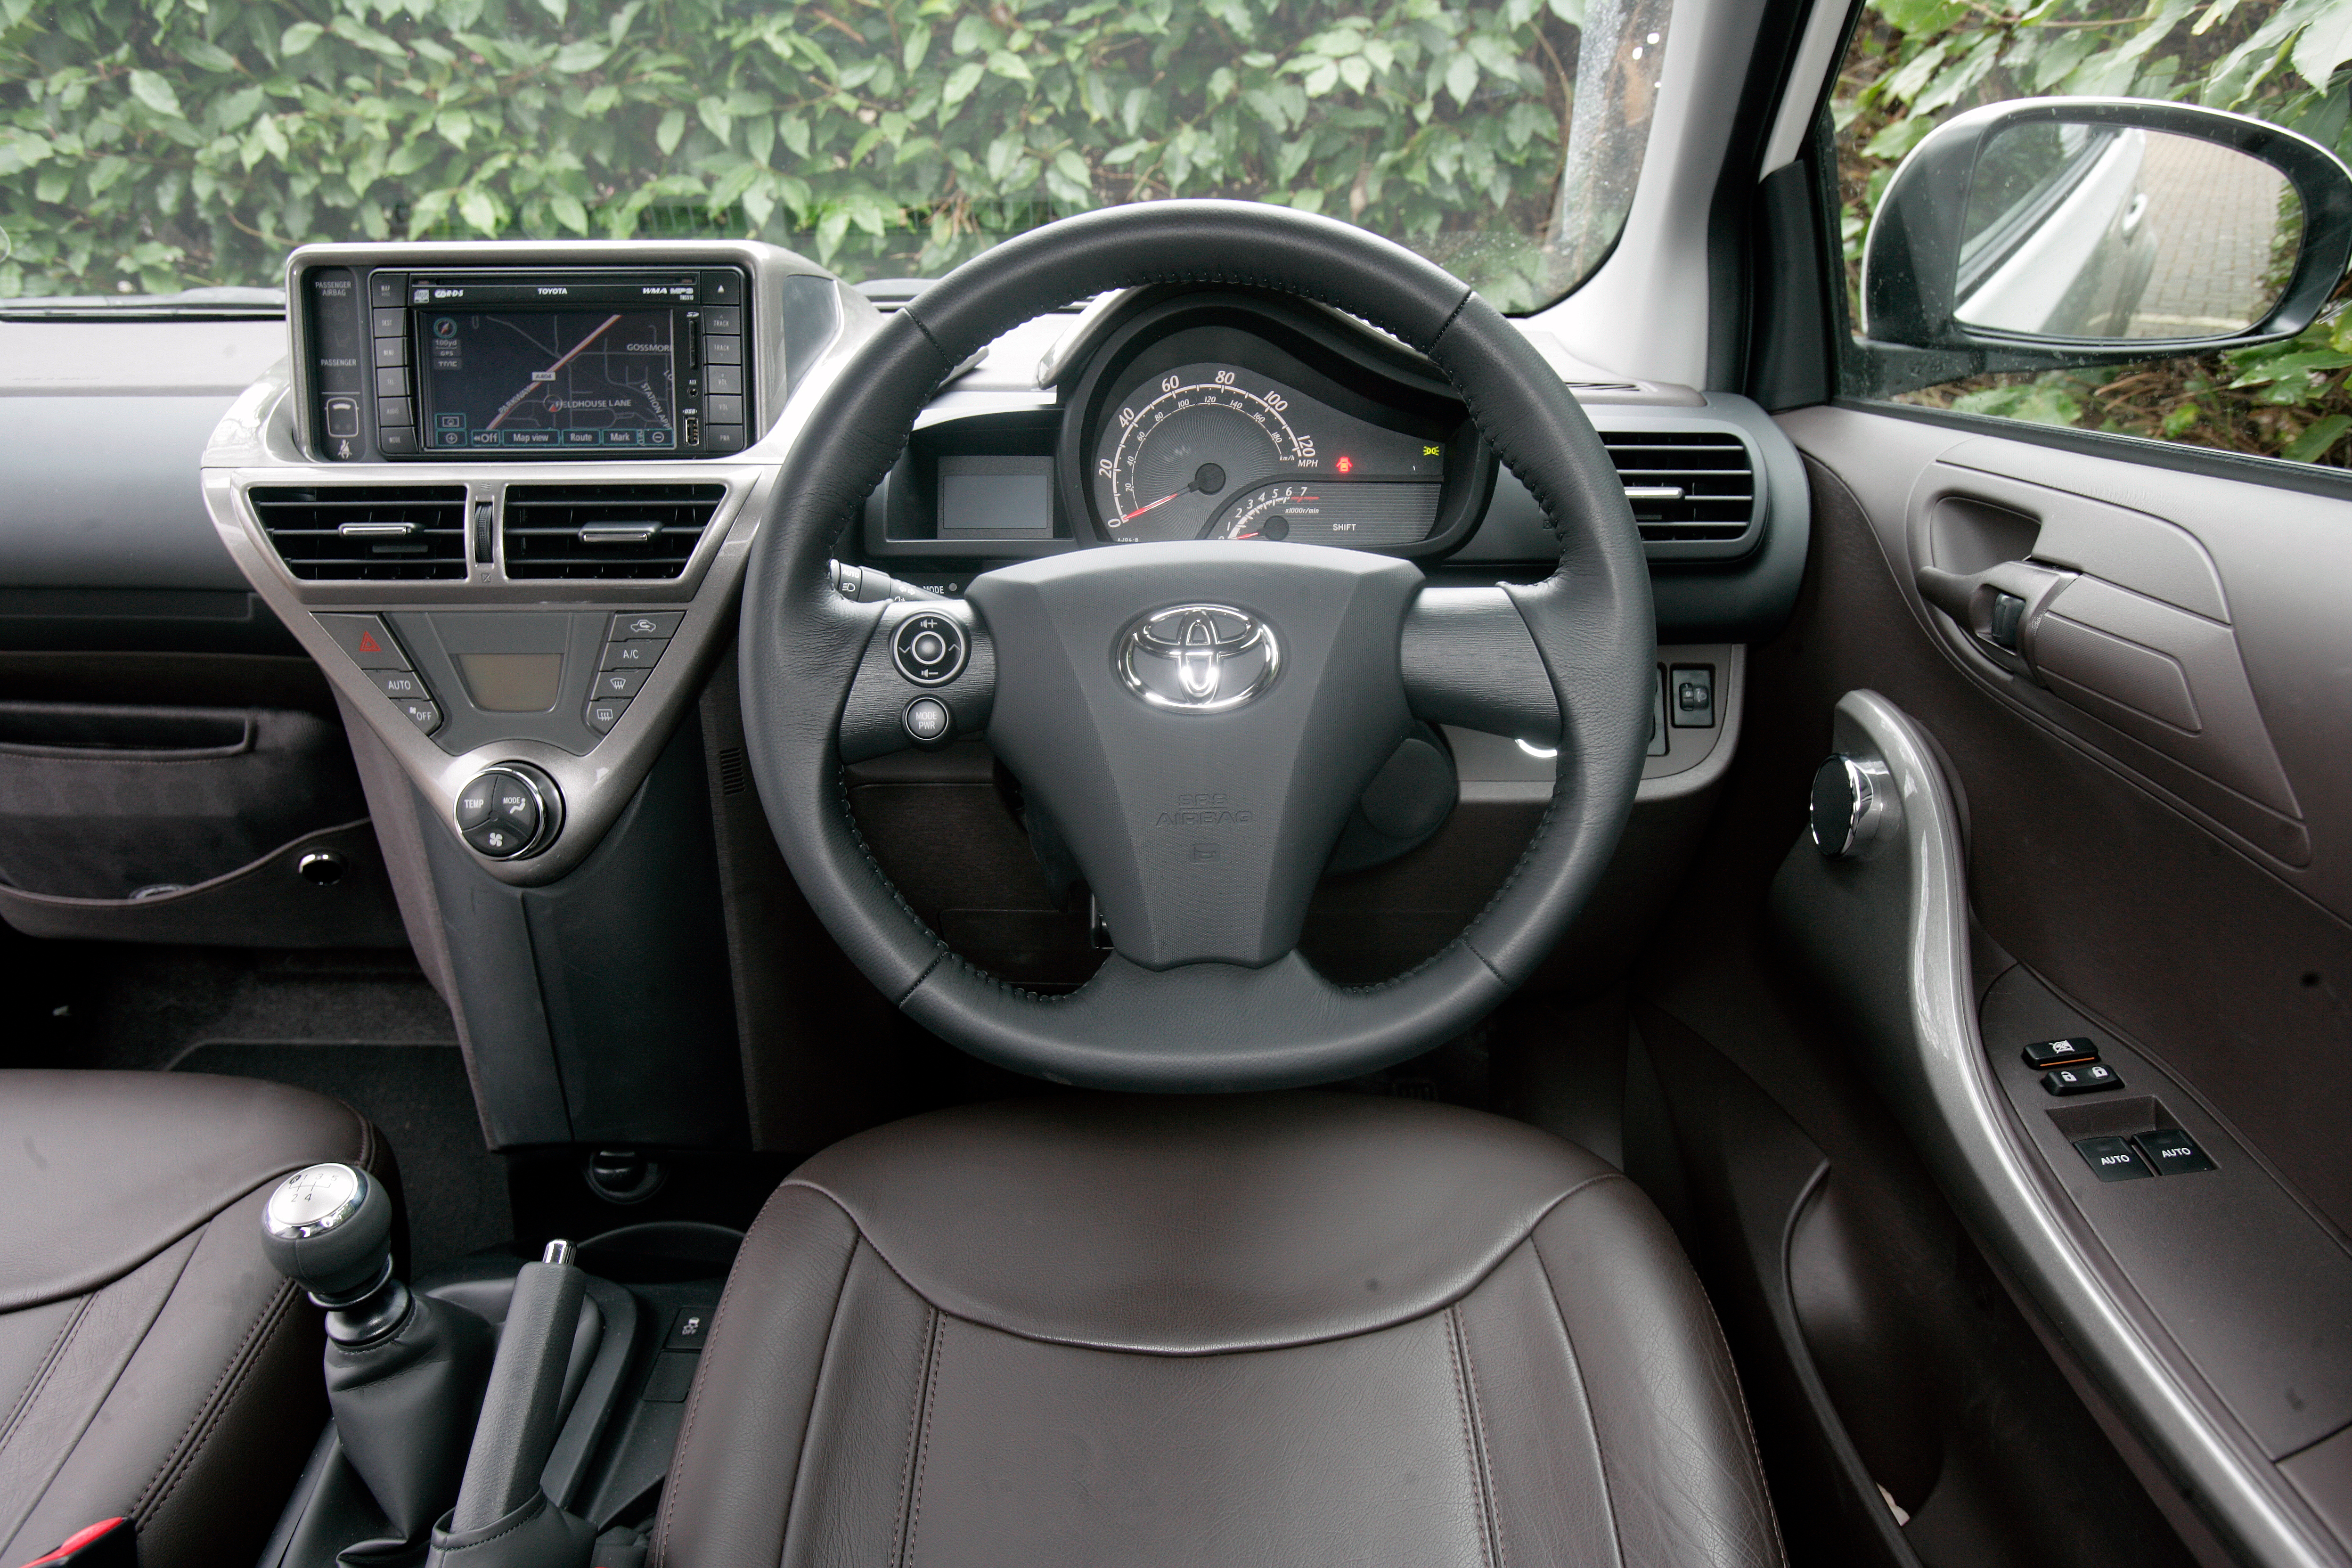 Toyota iQ dashboard